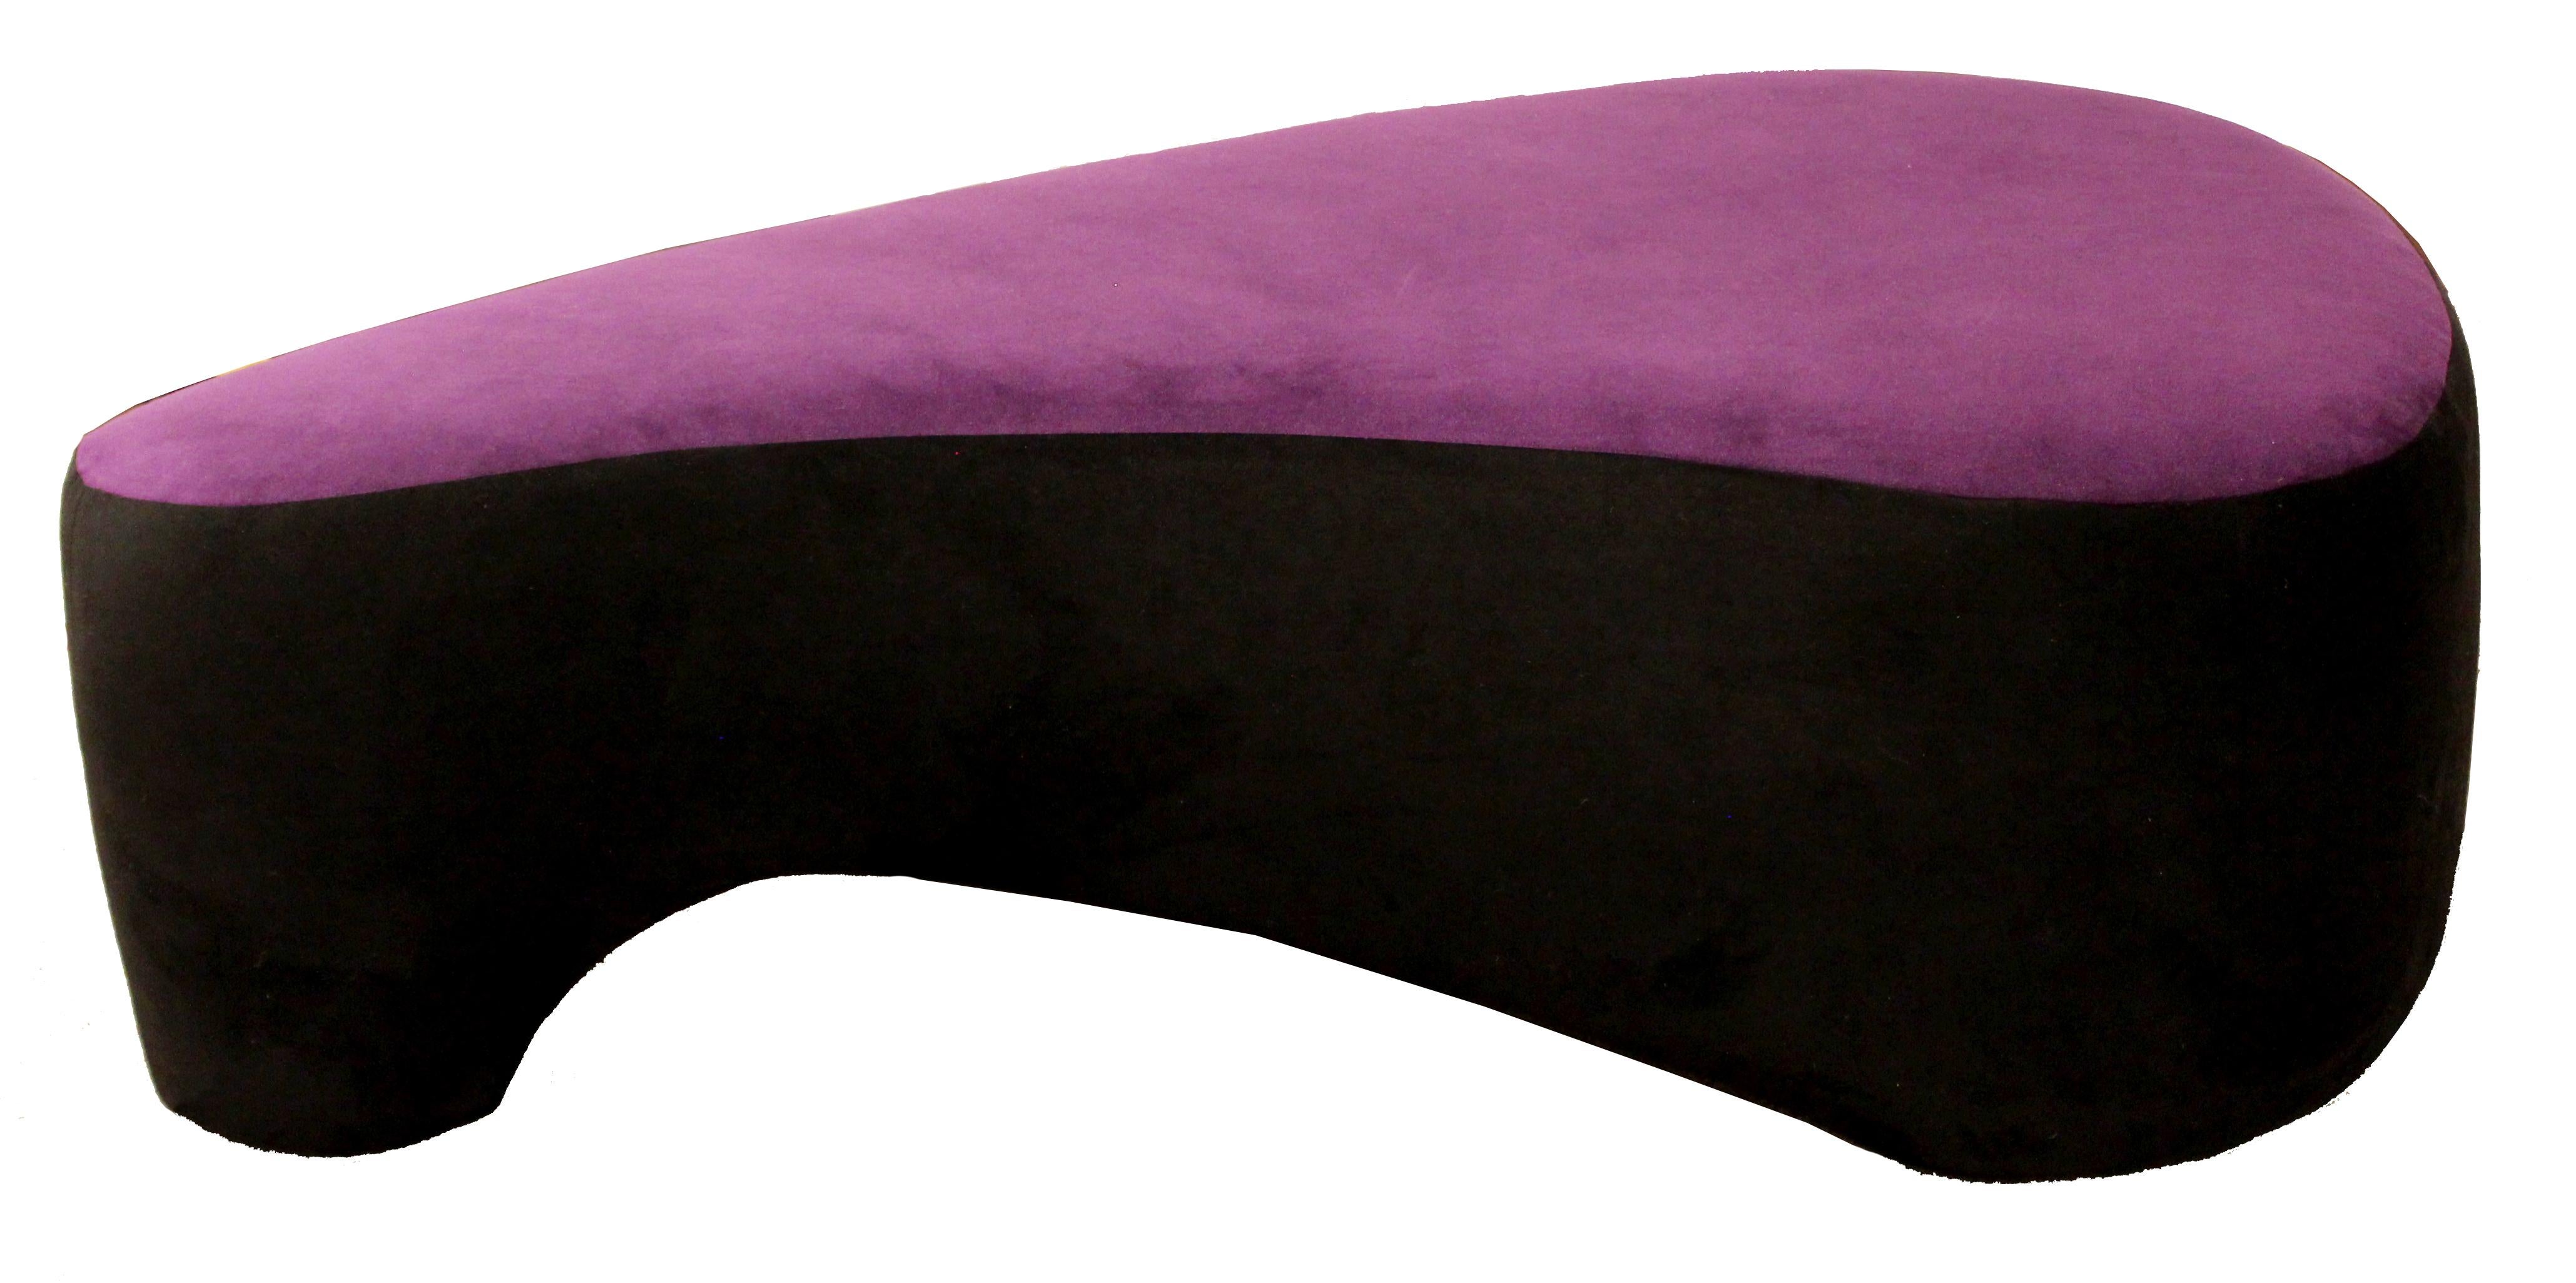 Contemporary Modern Purple Serpentine Cloud Sofas & Ottoman, Weiman 4